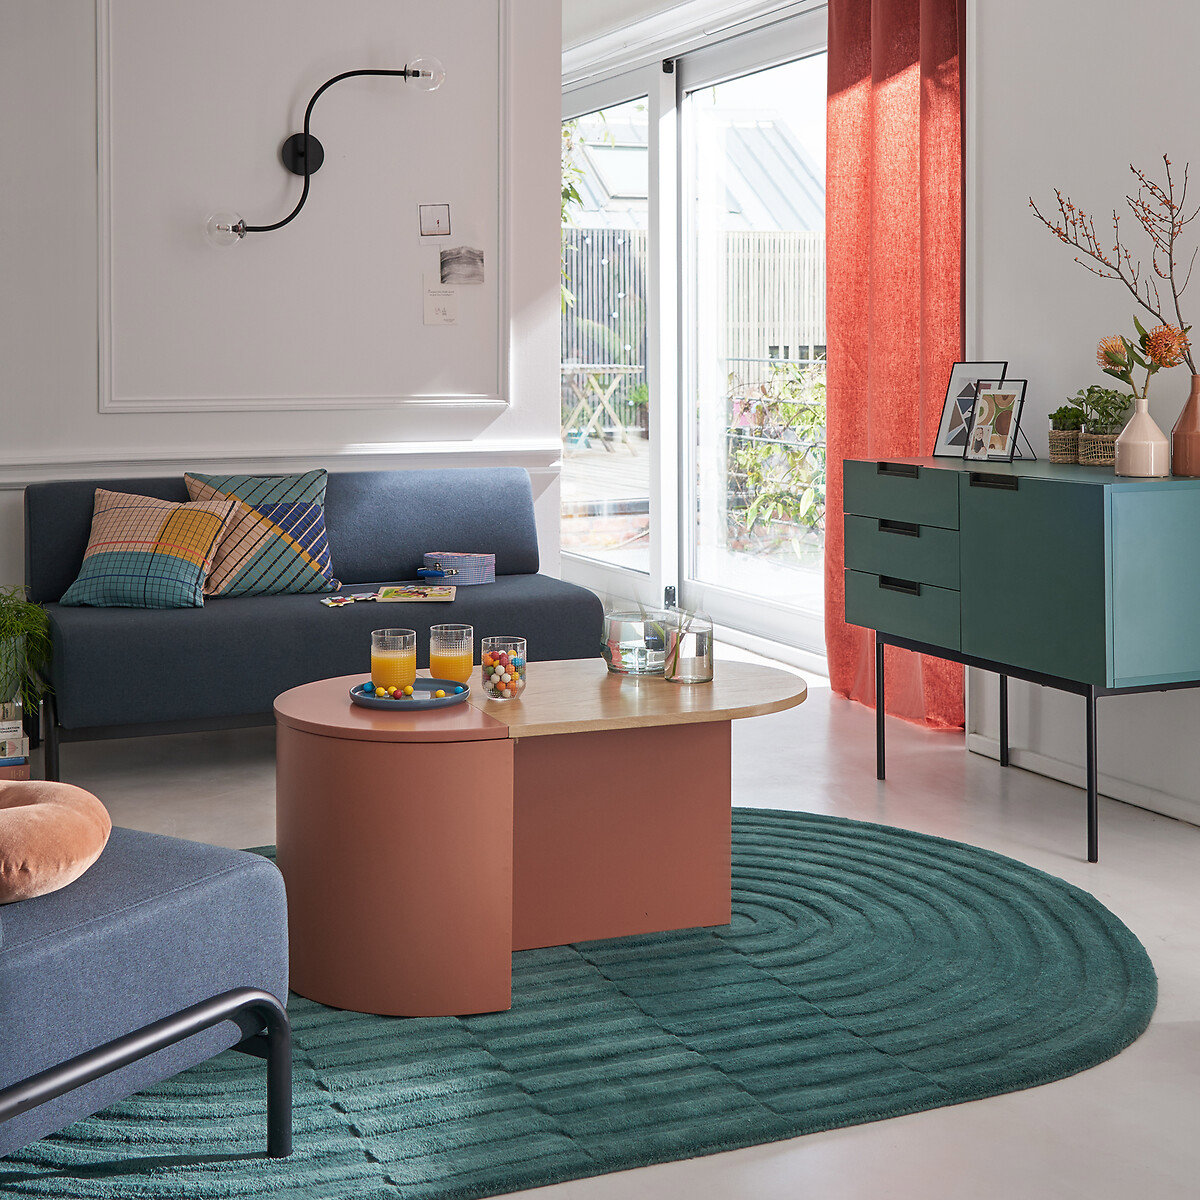 Mesa de centro ovalada con almacenamiento en salón nórdico sobre alfombra de color celeste turquesa. 